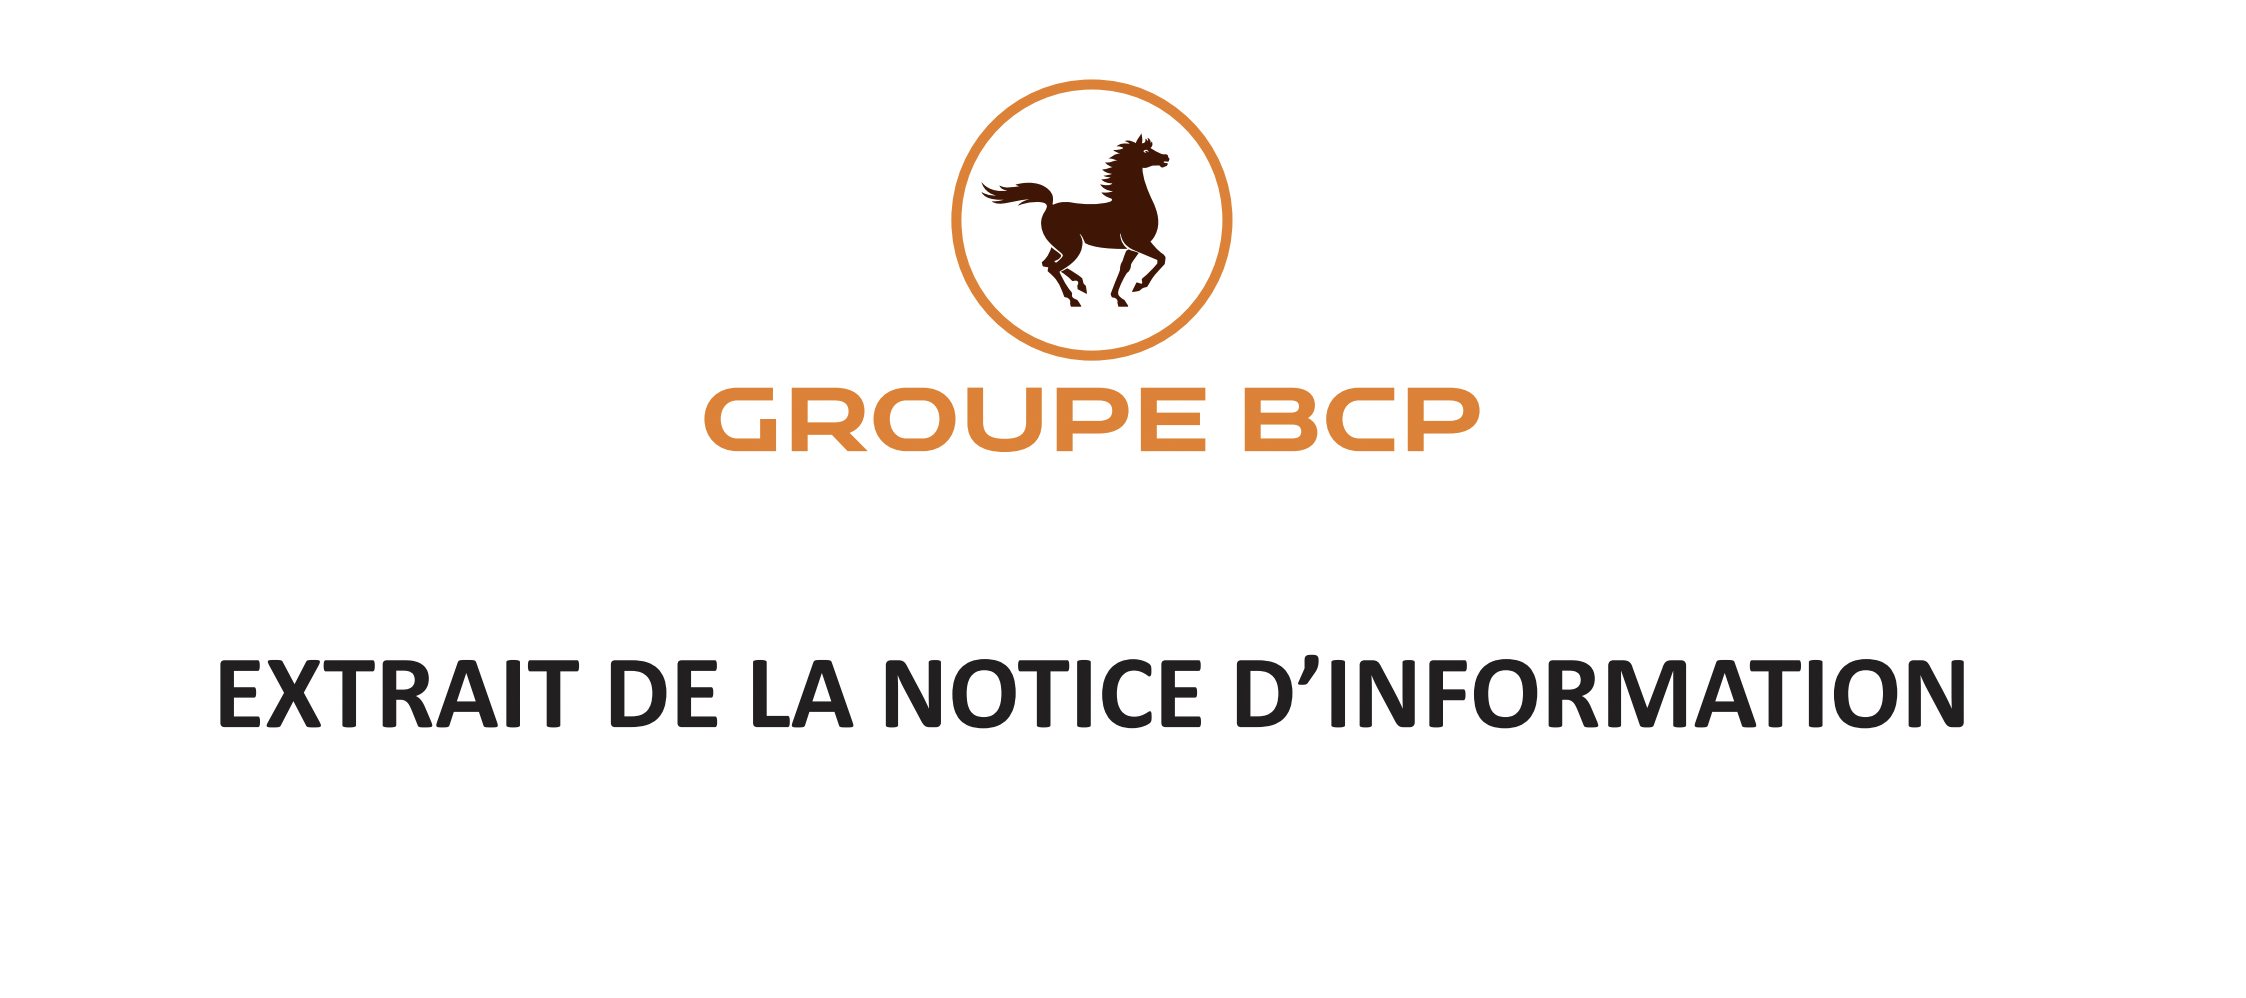 GROUPE BCP : Extrait de la notice d'information relative au programme de rachat d'actions BCP en vue de favoriser la liquidité